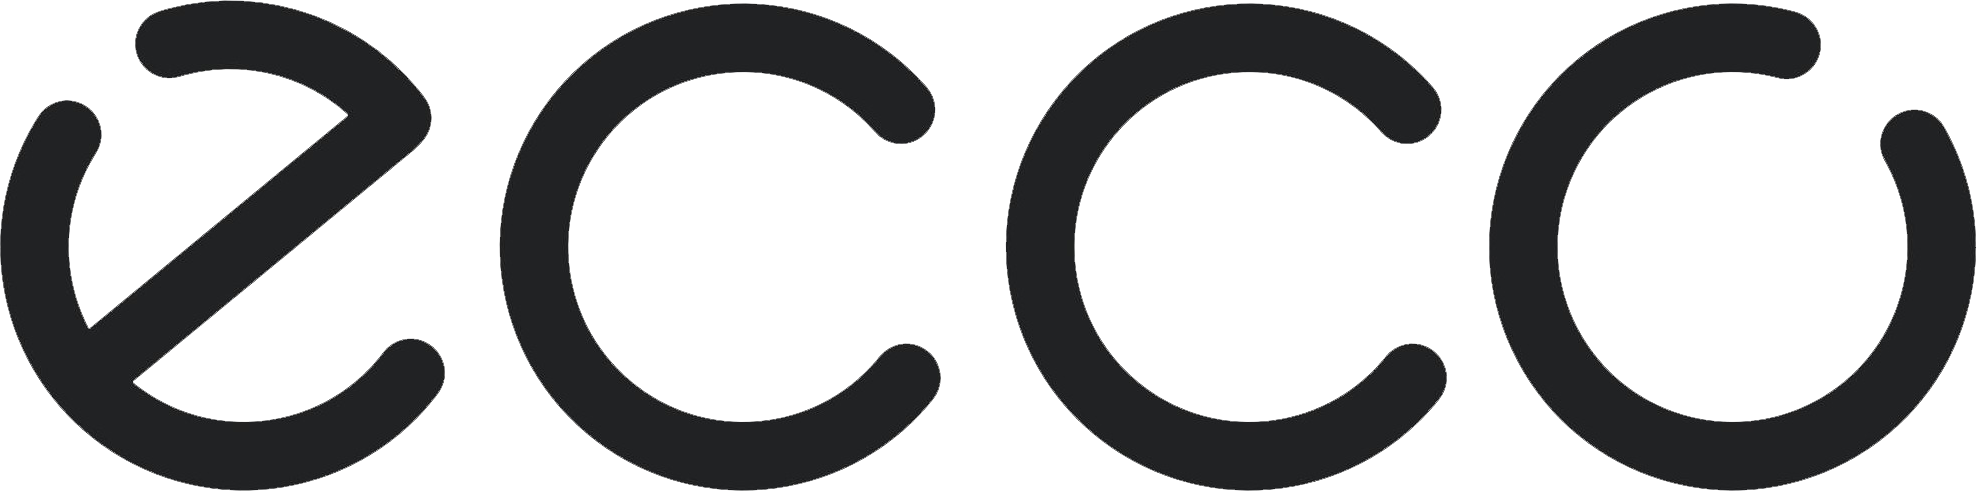 Ecco Company Logo - Diamond White Peper